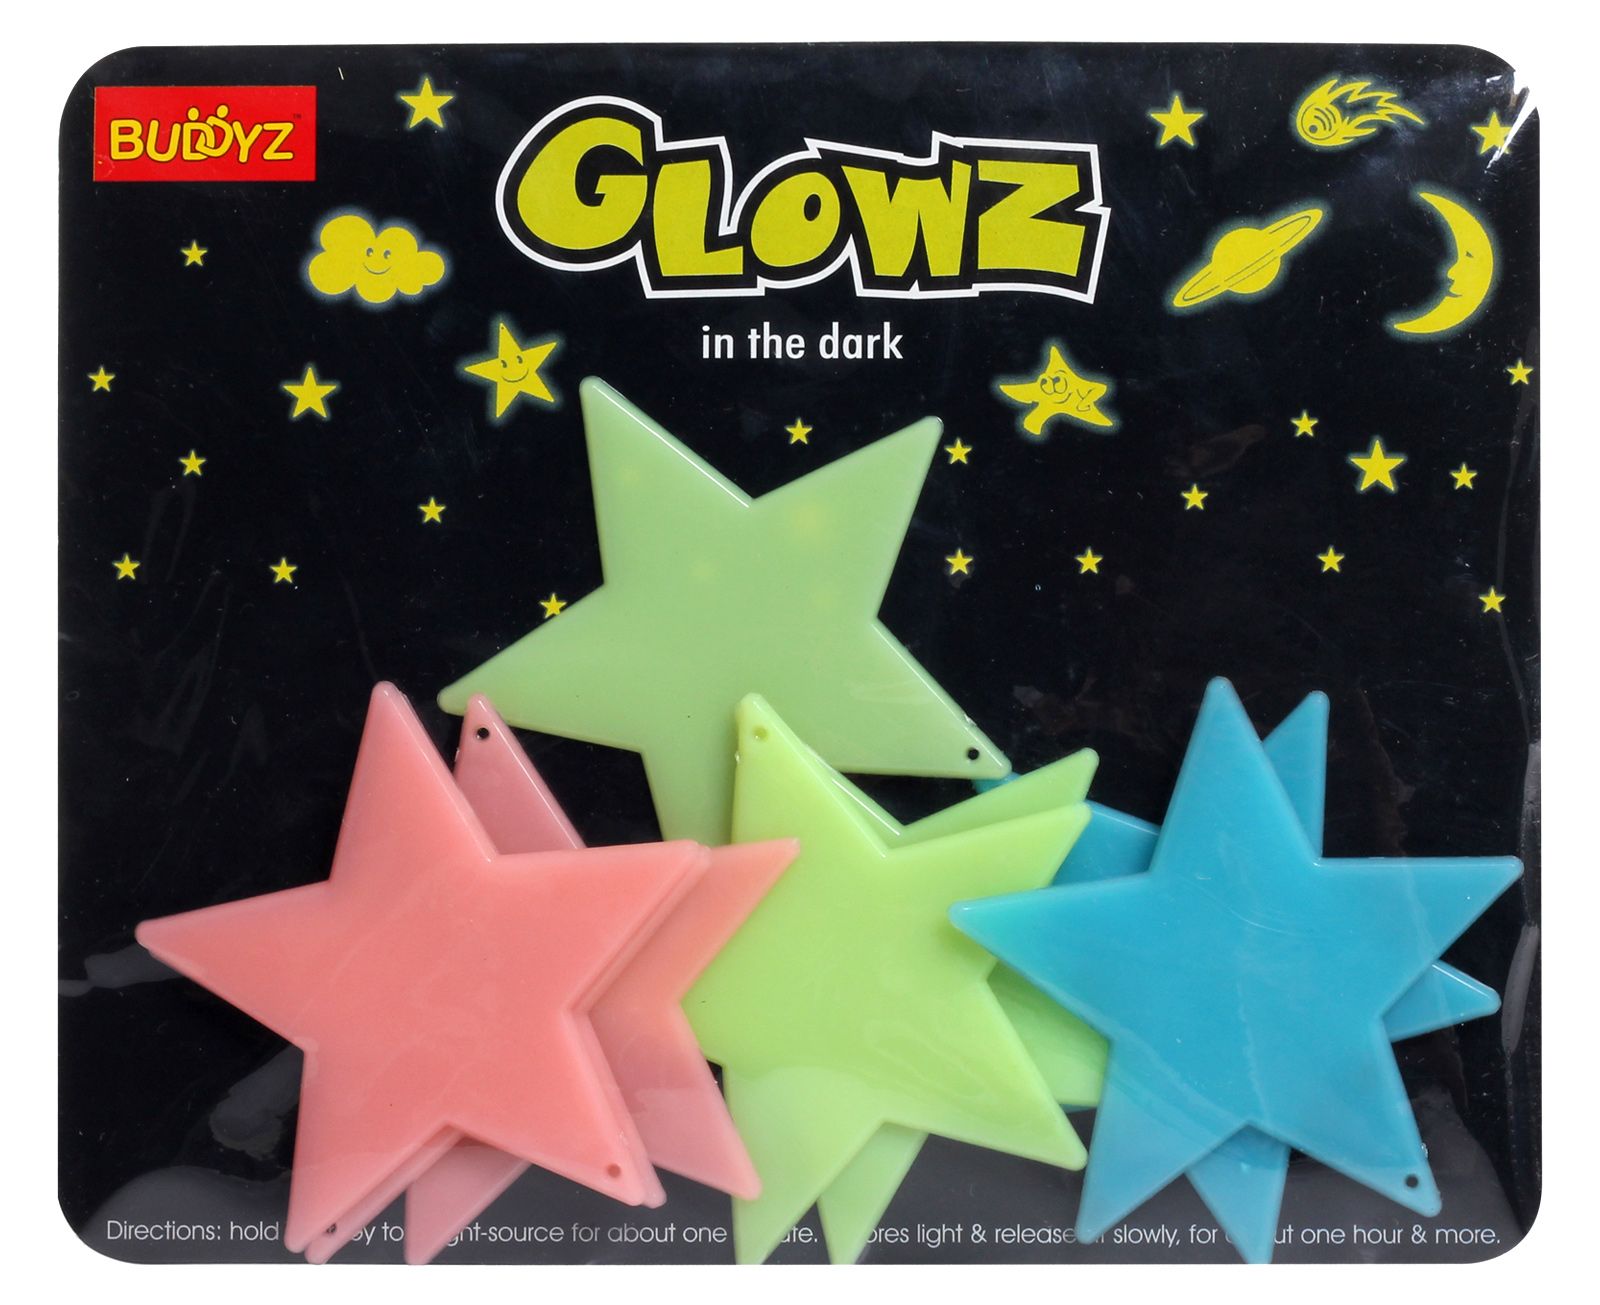 Buddyz - Glowz Big Stars